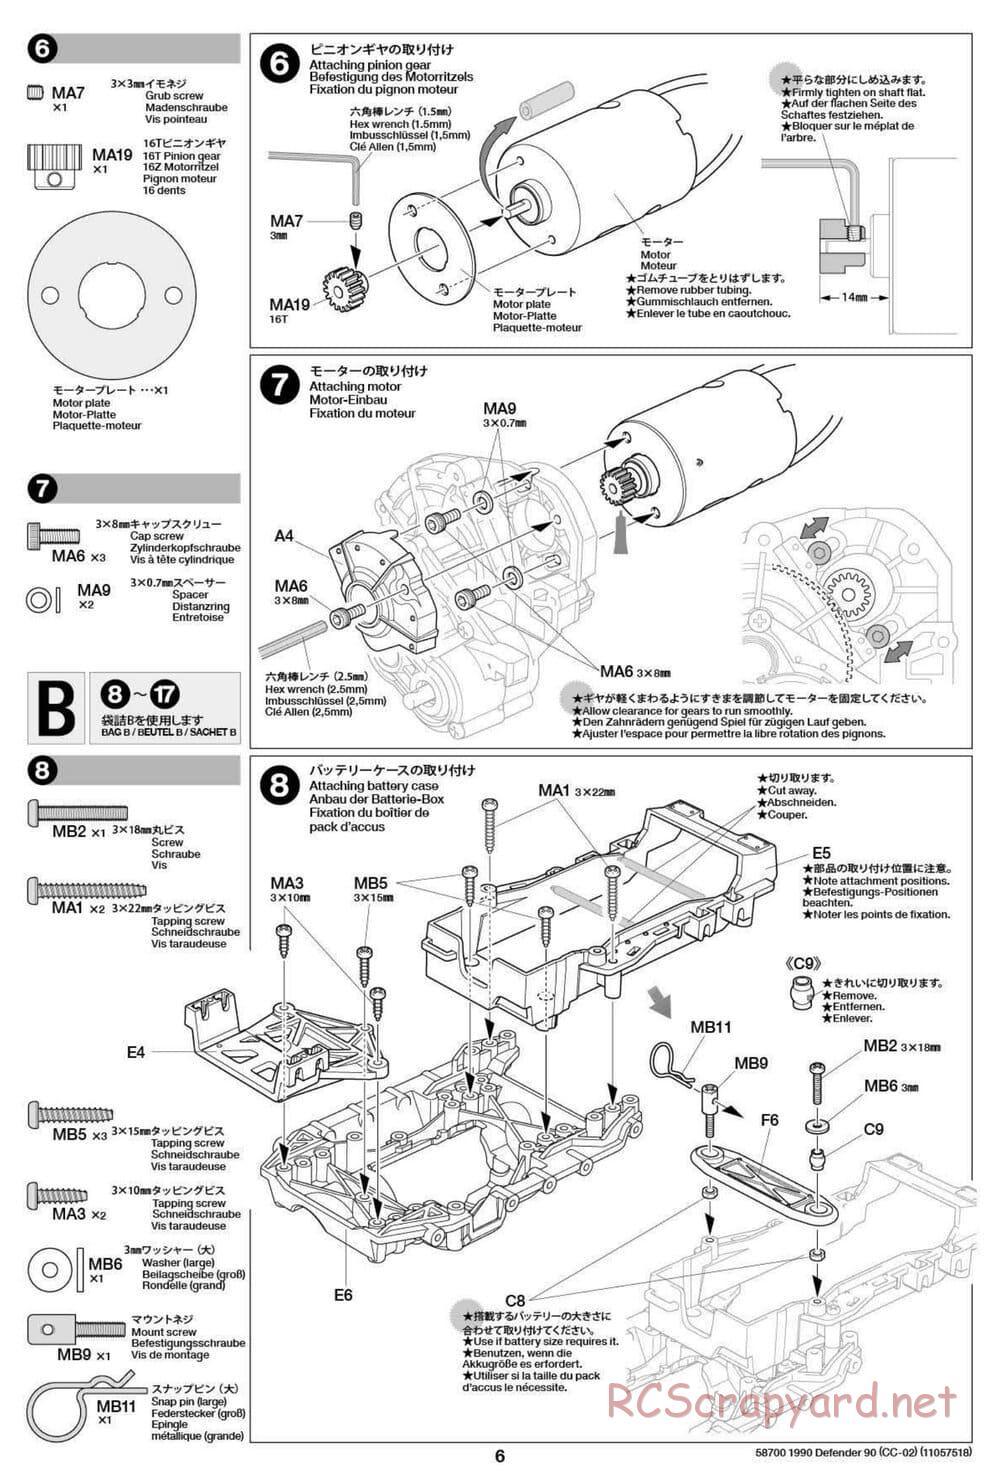 Tamiya - 1990 Land Rover Defender 90 - CC-02 Chassis - Manual - Page 6